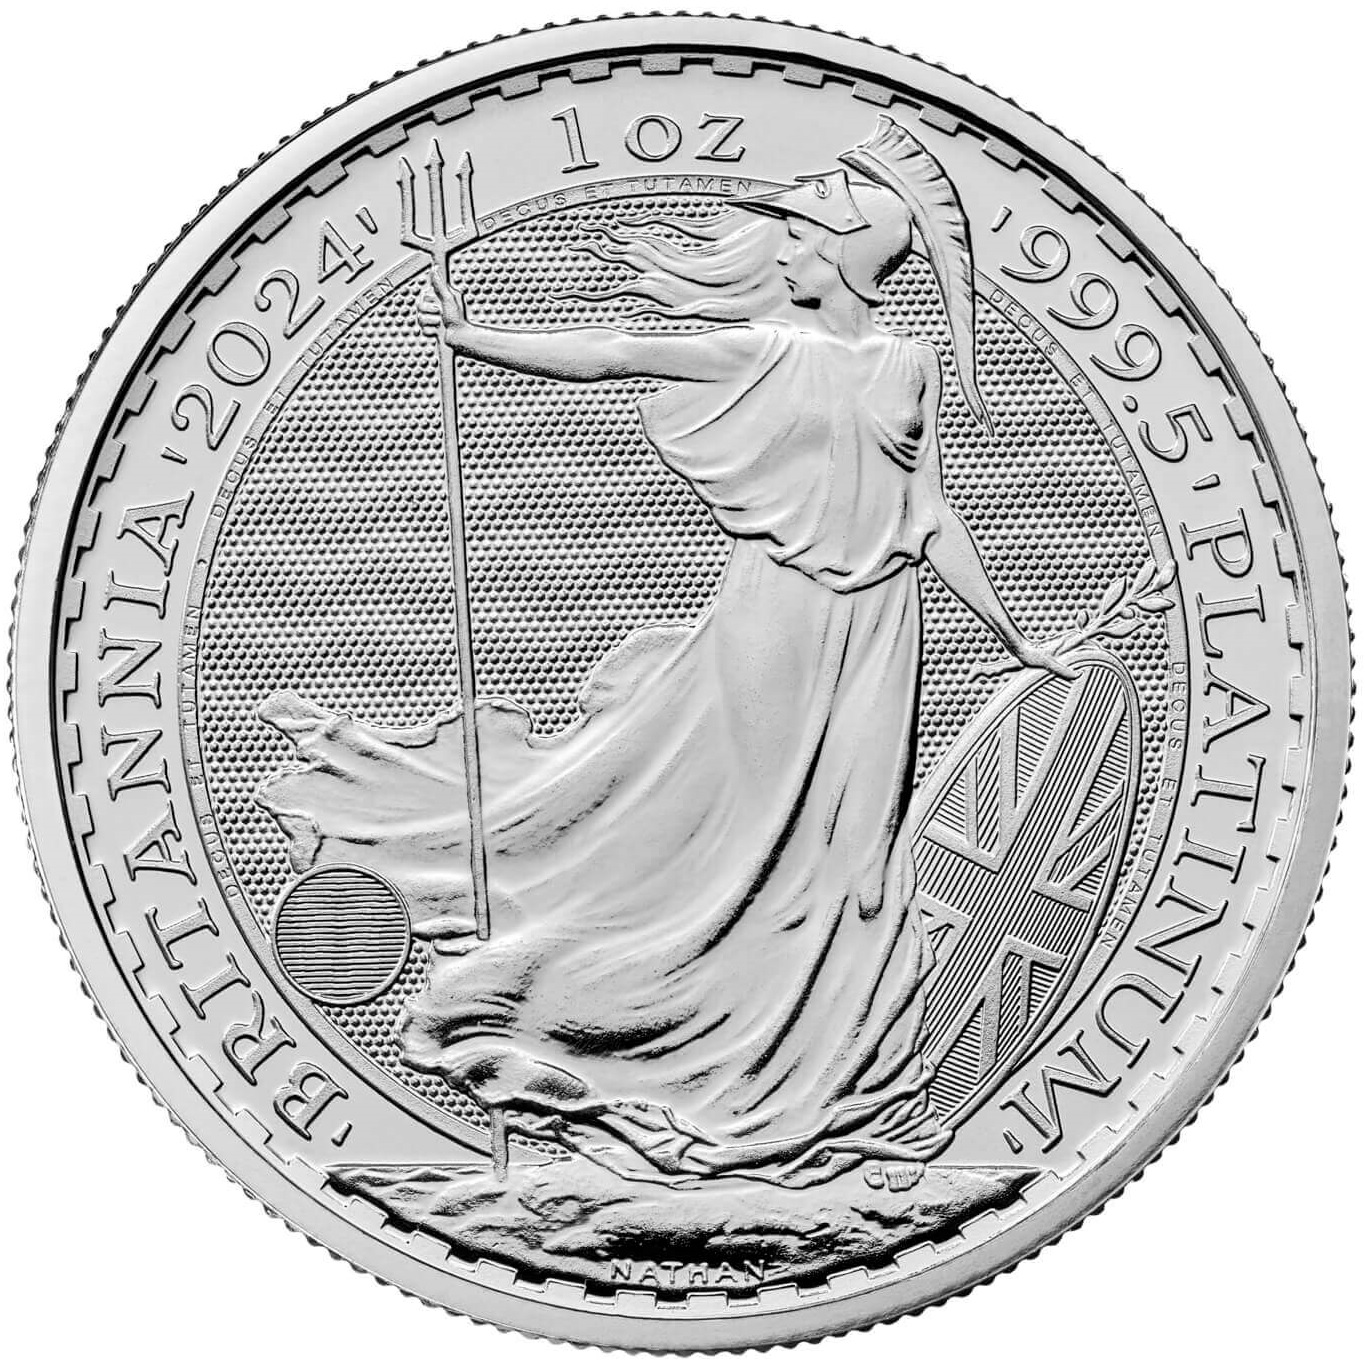 1oz. Platinum Britannia bullion coin